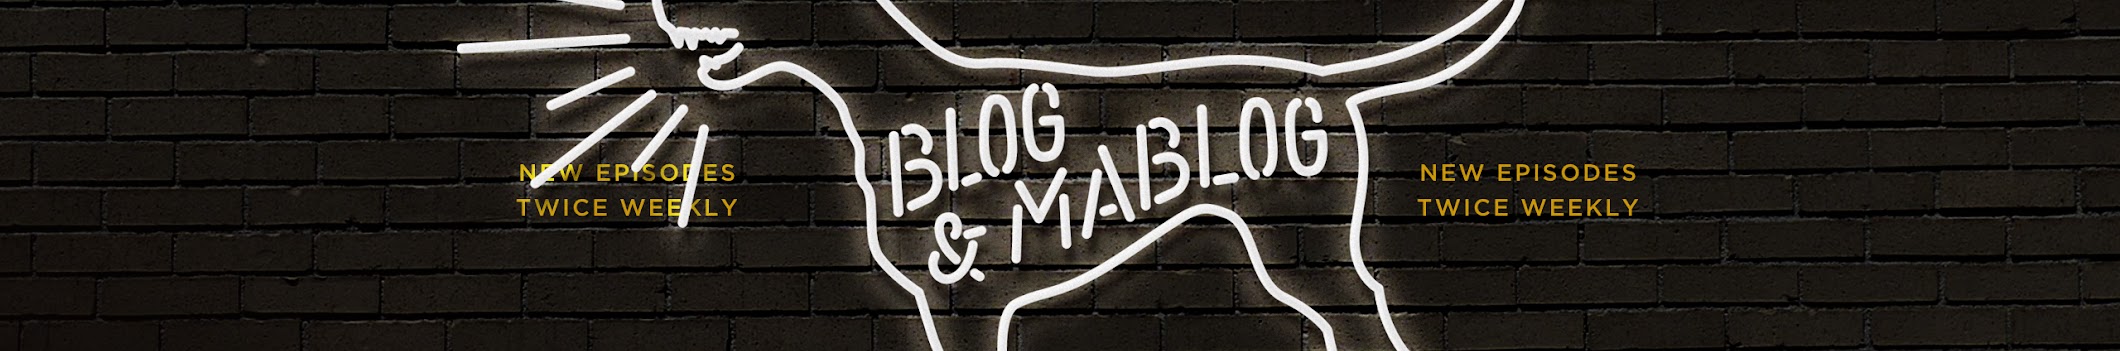 Doug and Evan  Blog & Mablog